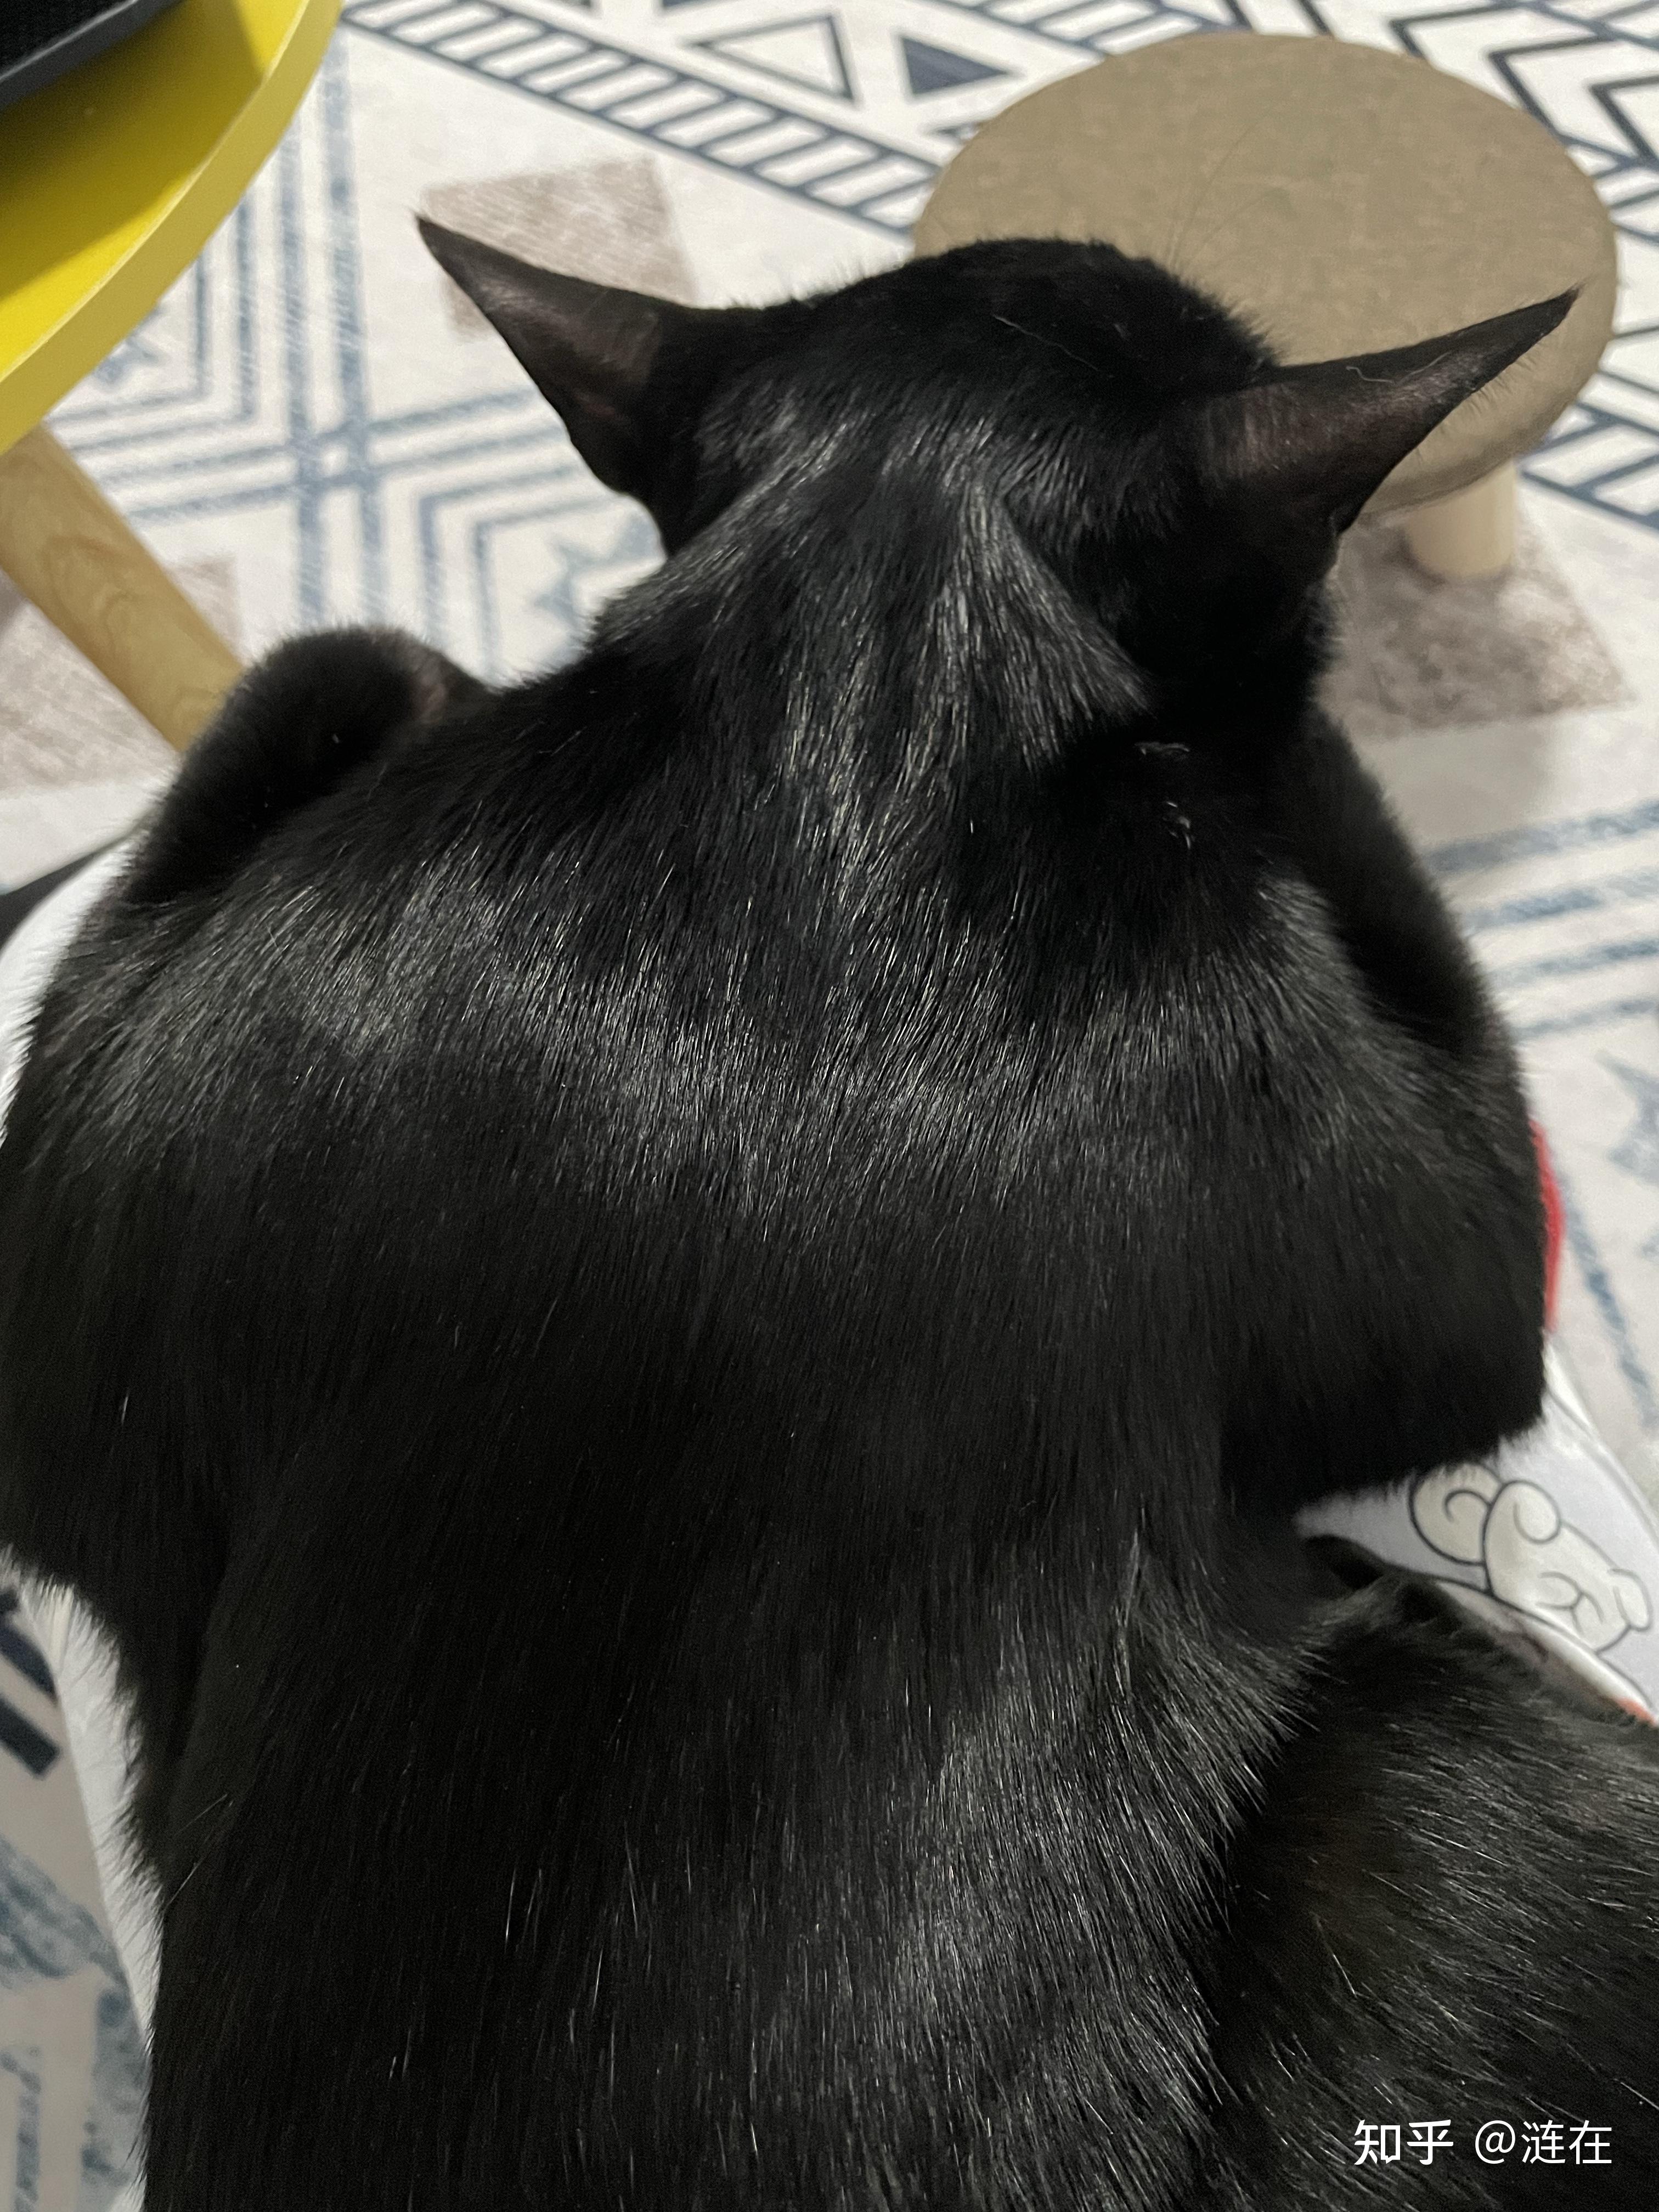 有纯黑色的暹罗猫吗? 